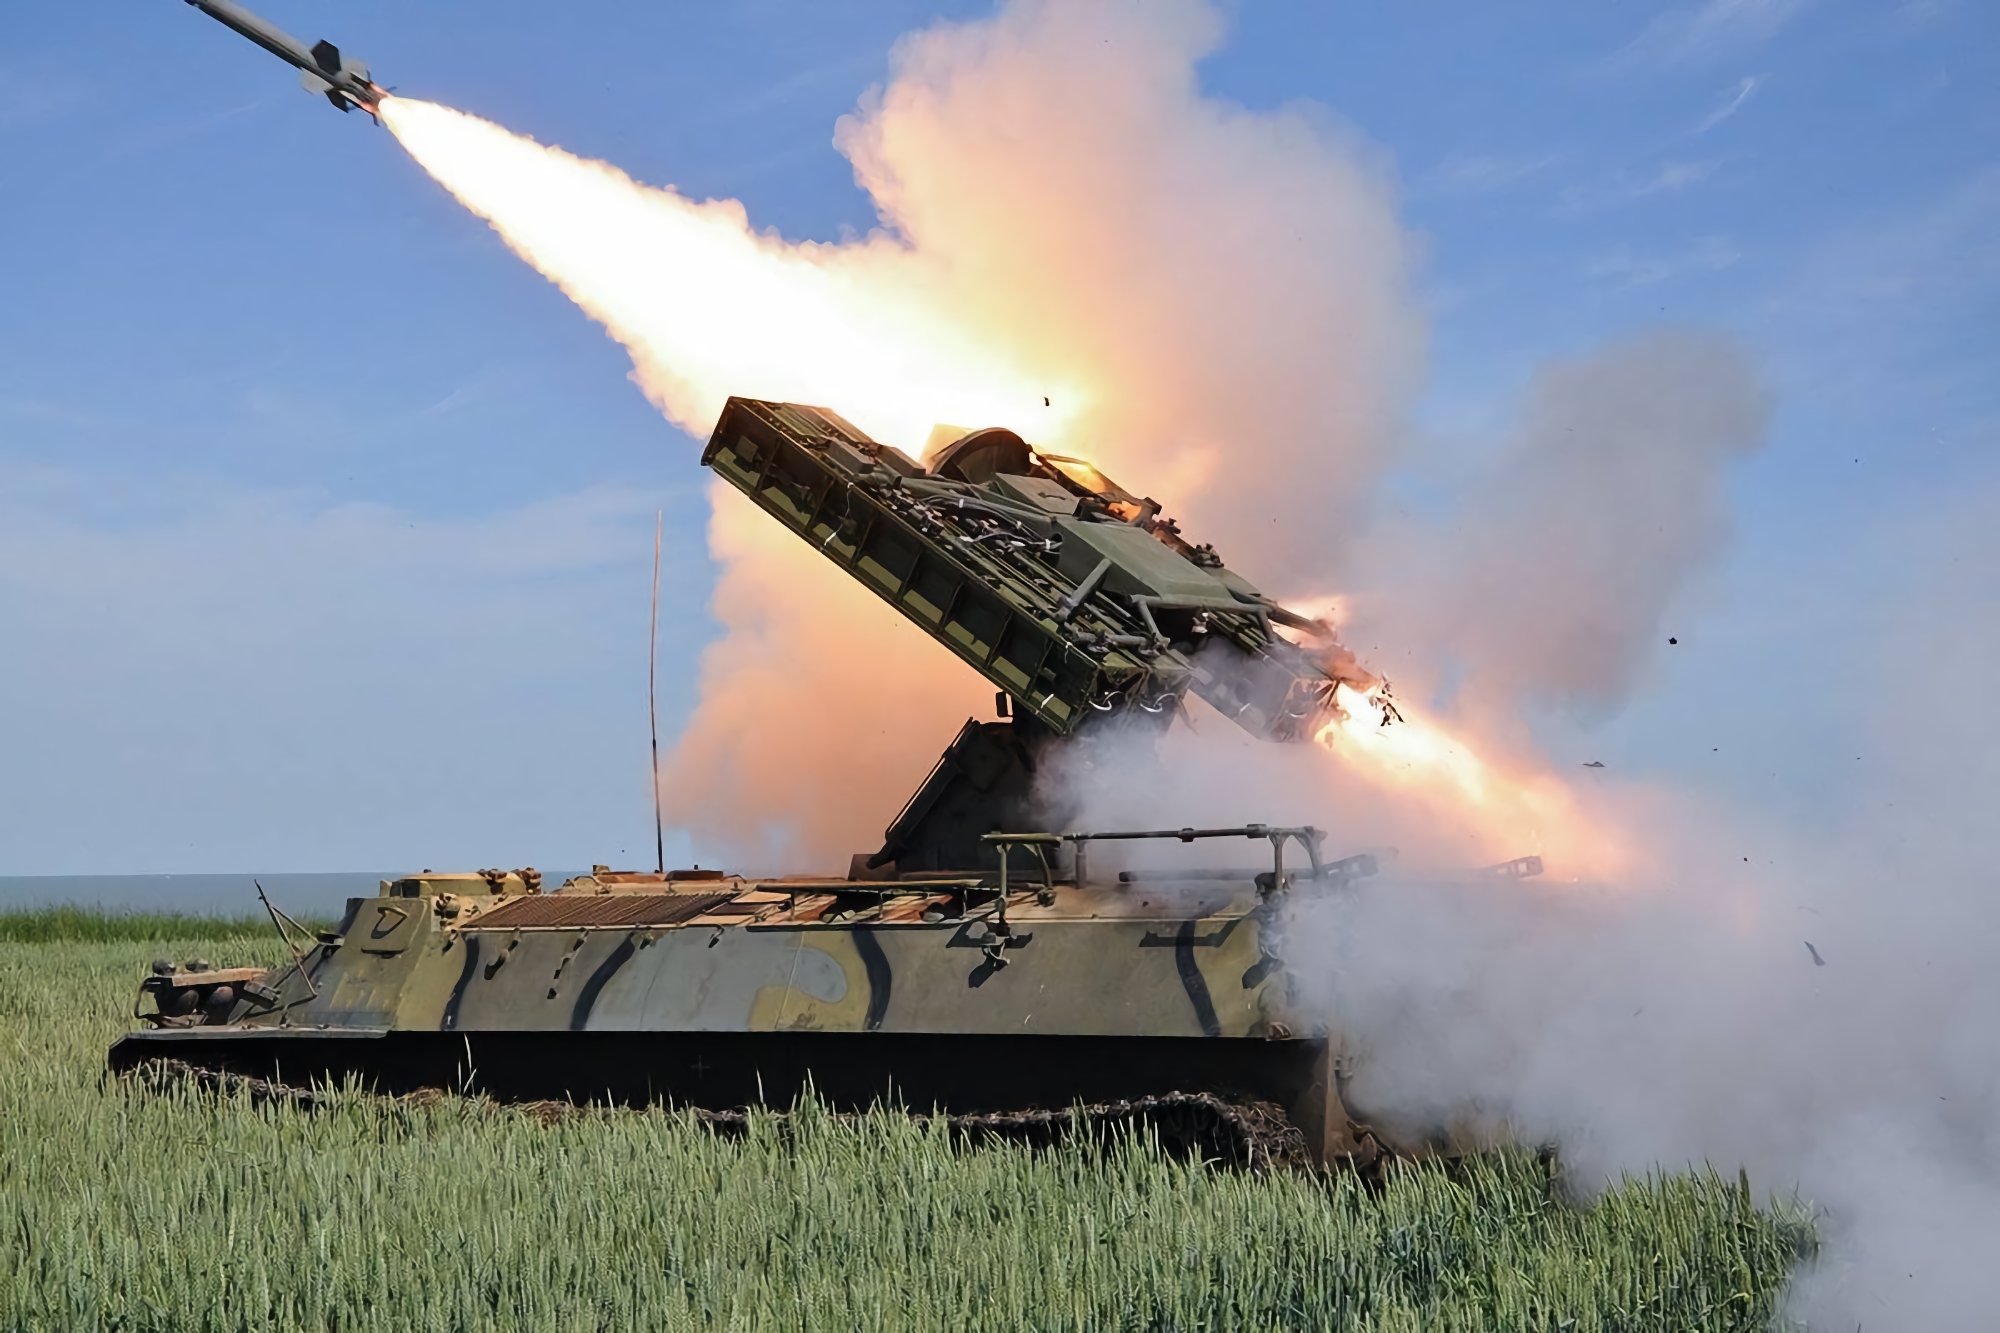 Le forze armate dell'Ucraina con l'aiuto del sistema missilistico antiaereo "Strela-10" hanno abbattuto un UAV da ricognizione compatto dei Rashists